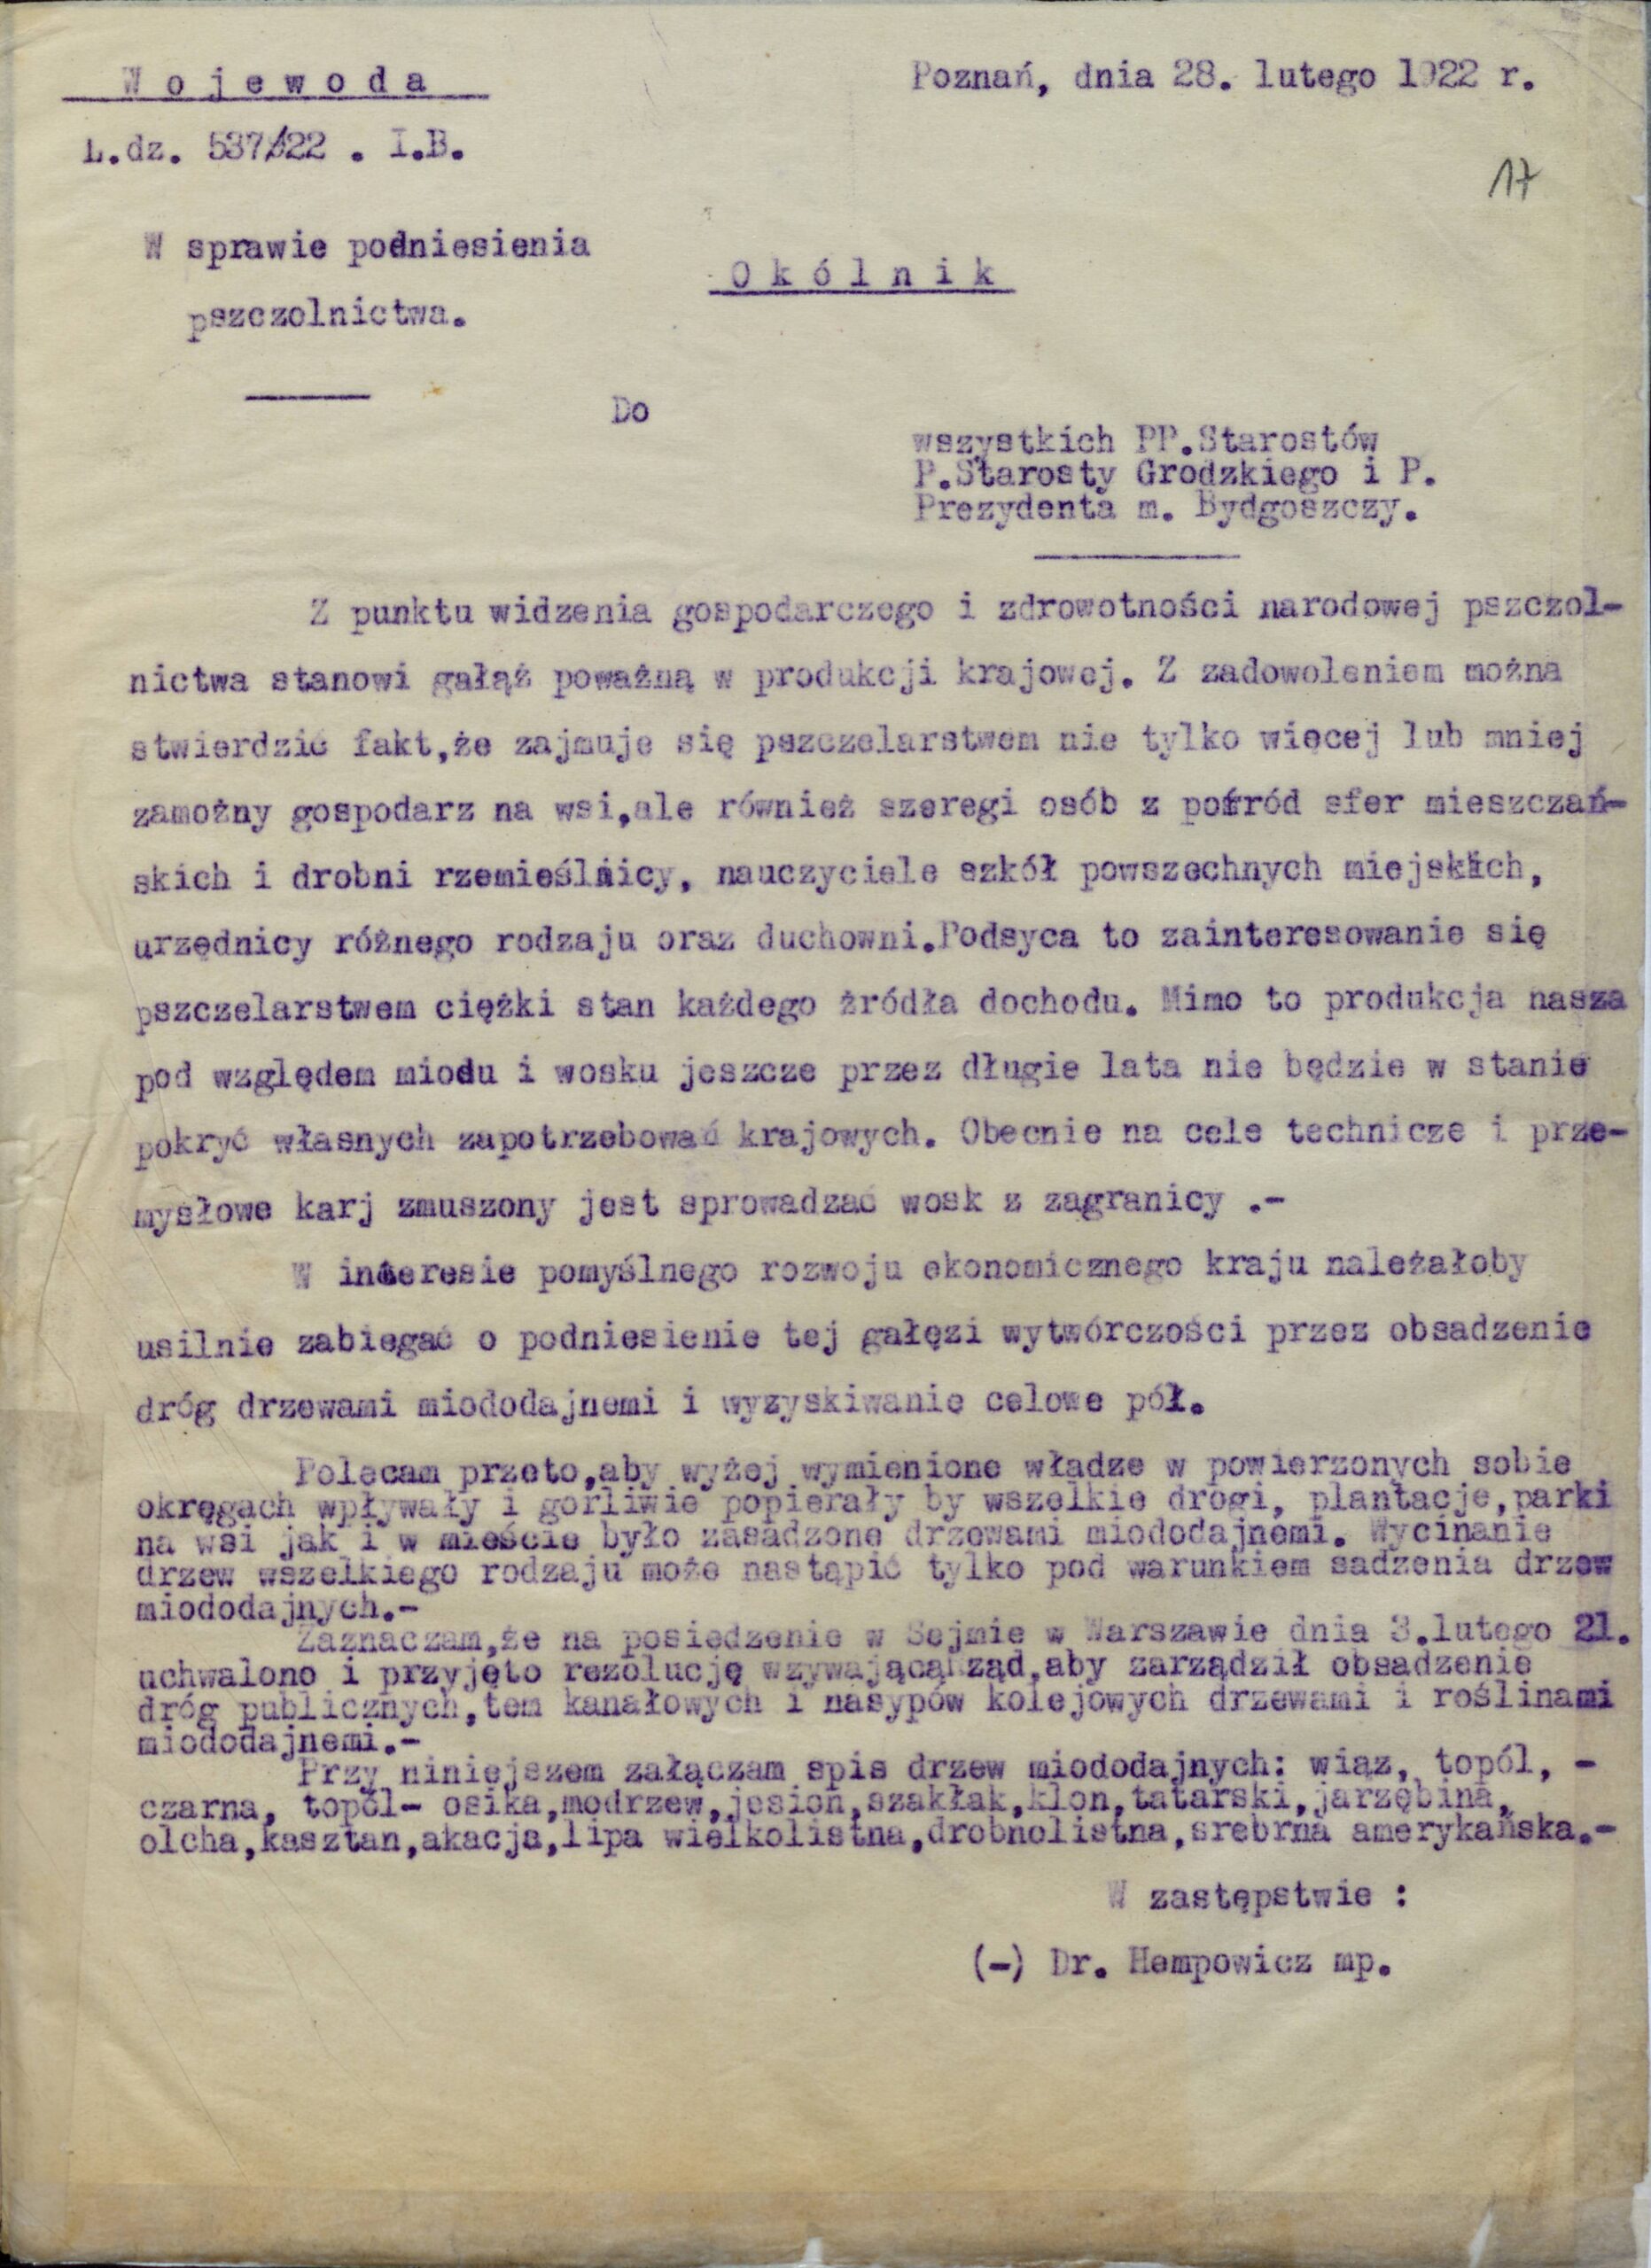 Okólnik wojewody poznańskiego do starostów w sprawie wspierania pszczelarstwa m.in. poprzez obsadzanie dróg drzewami miododajnymi, 28 lutego 1922